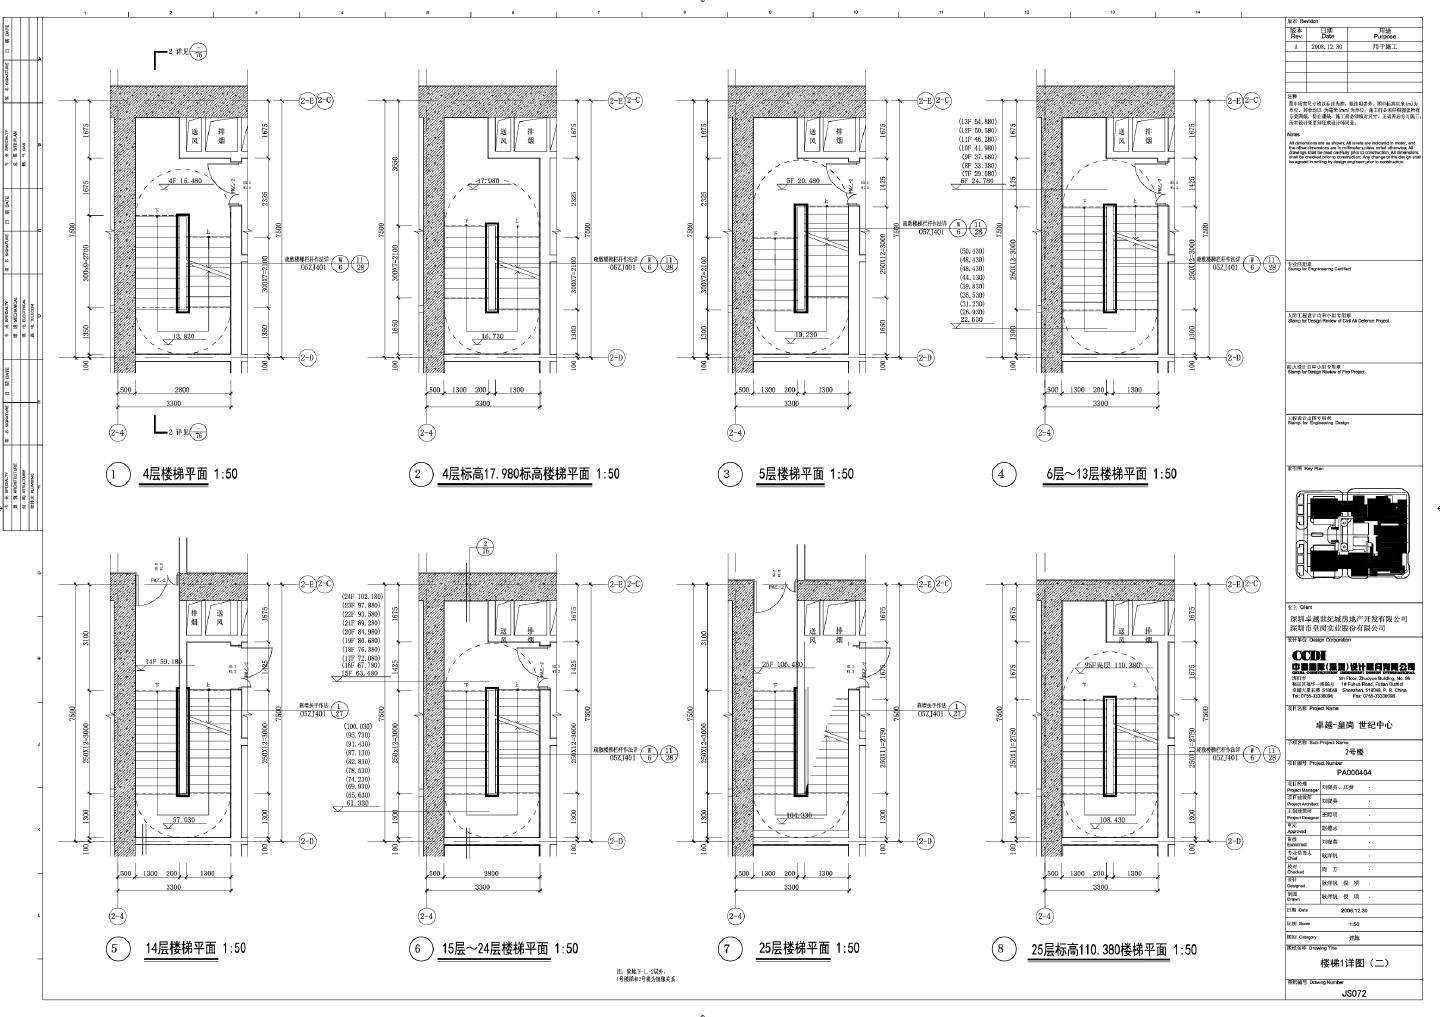 卓越·皇岗世纪中心2号楼建施072楼梯详图CAD图.DWG